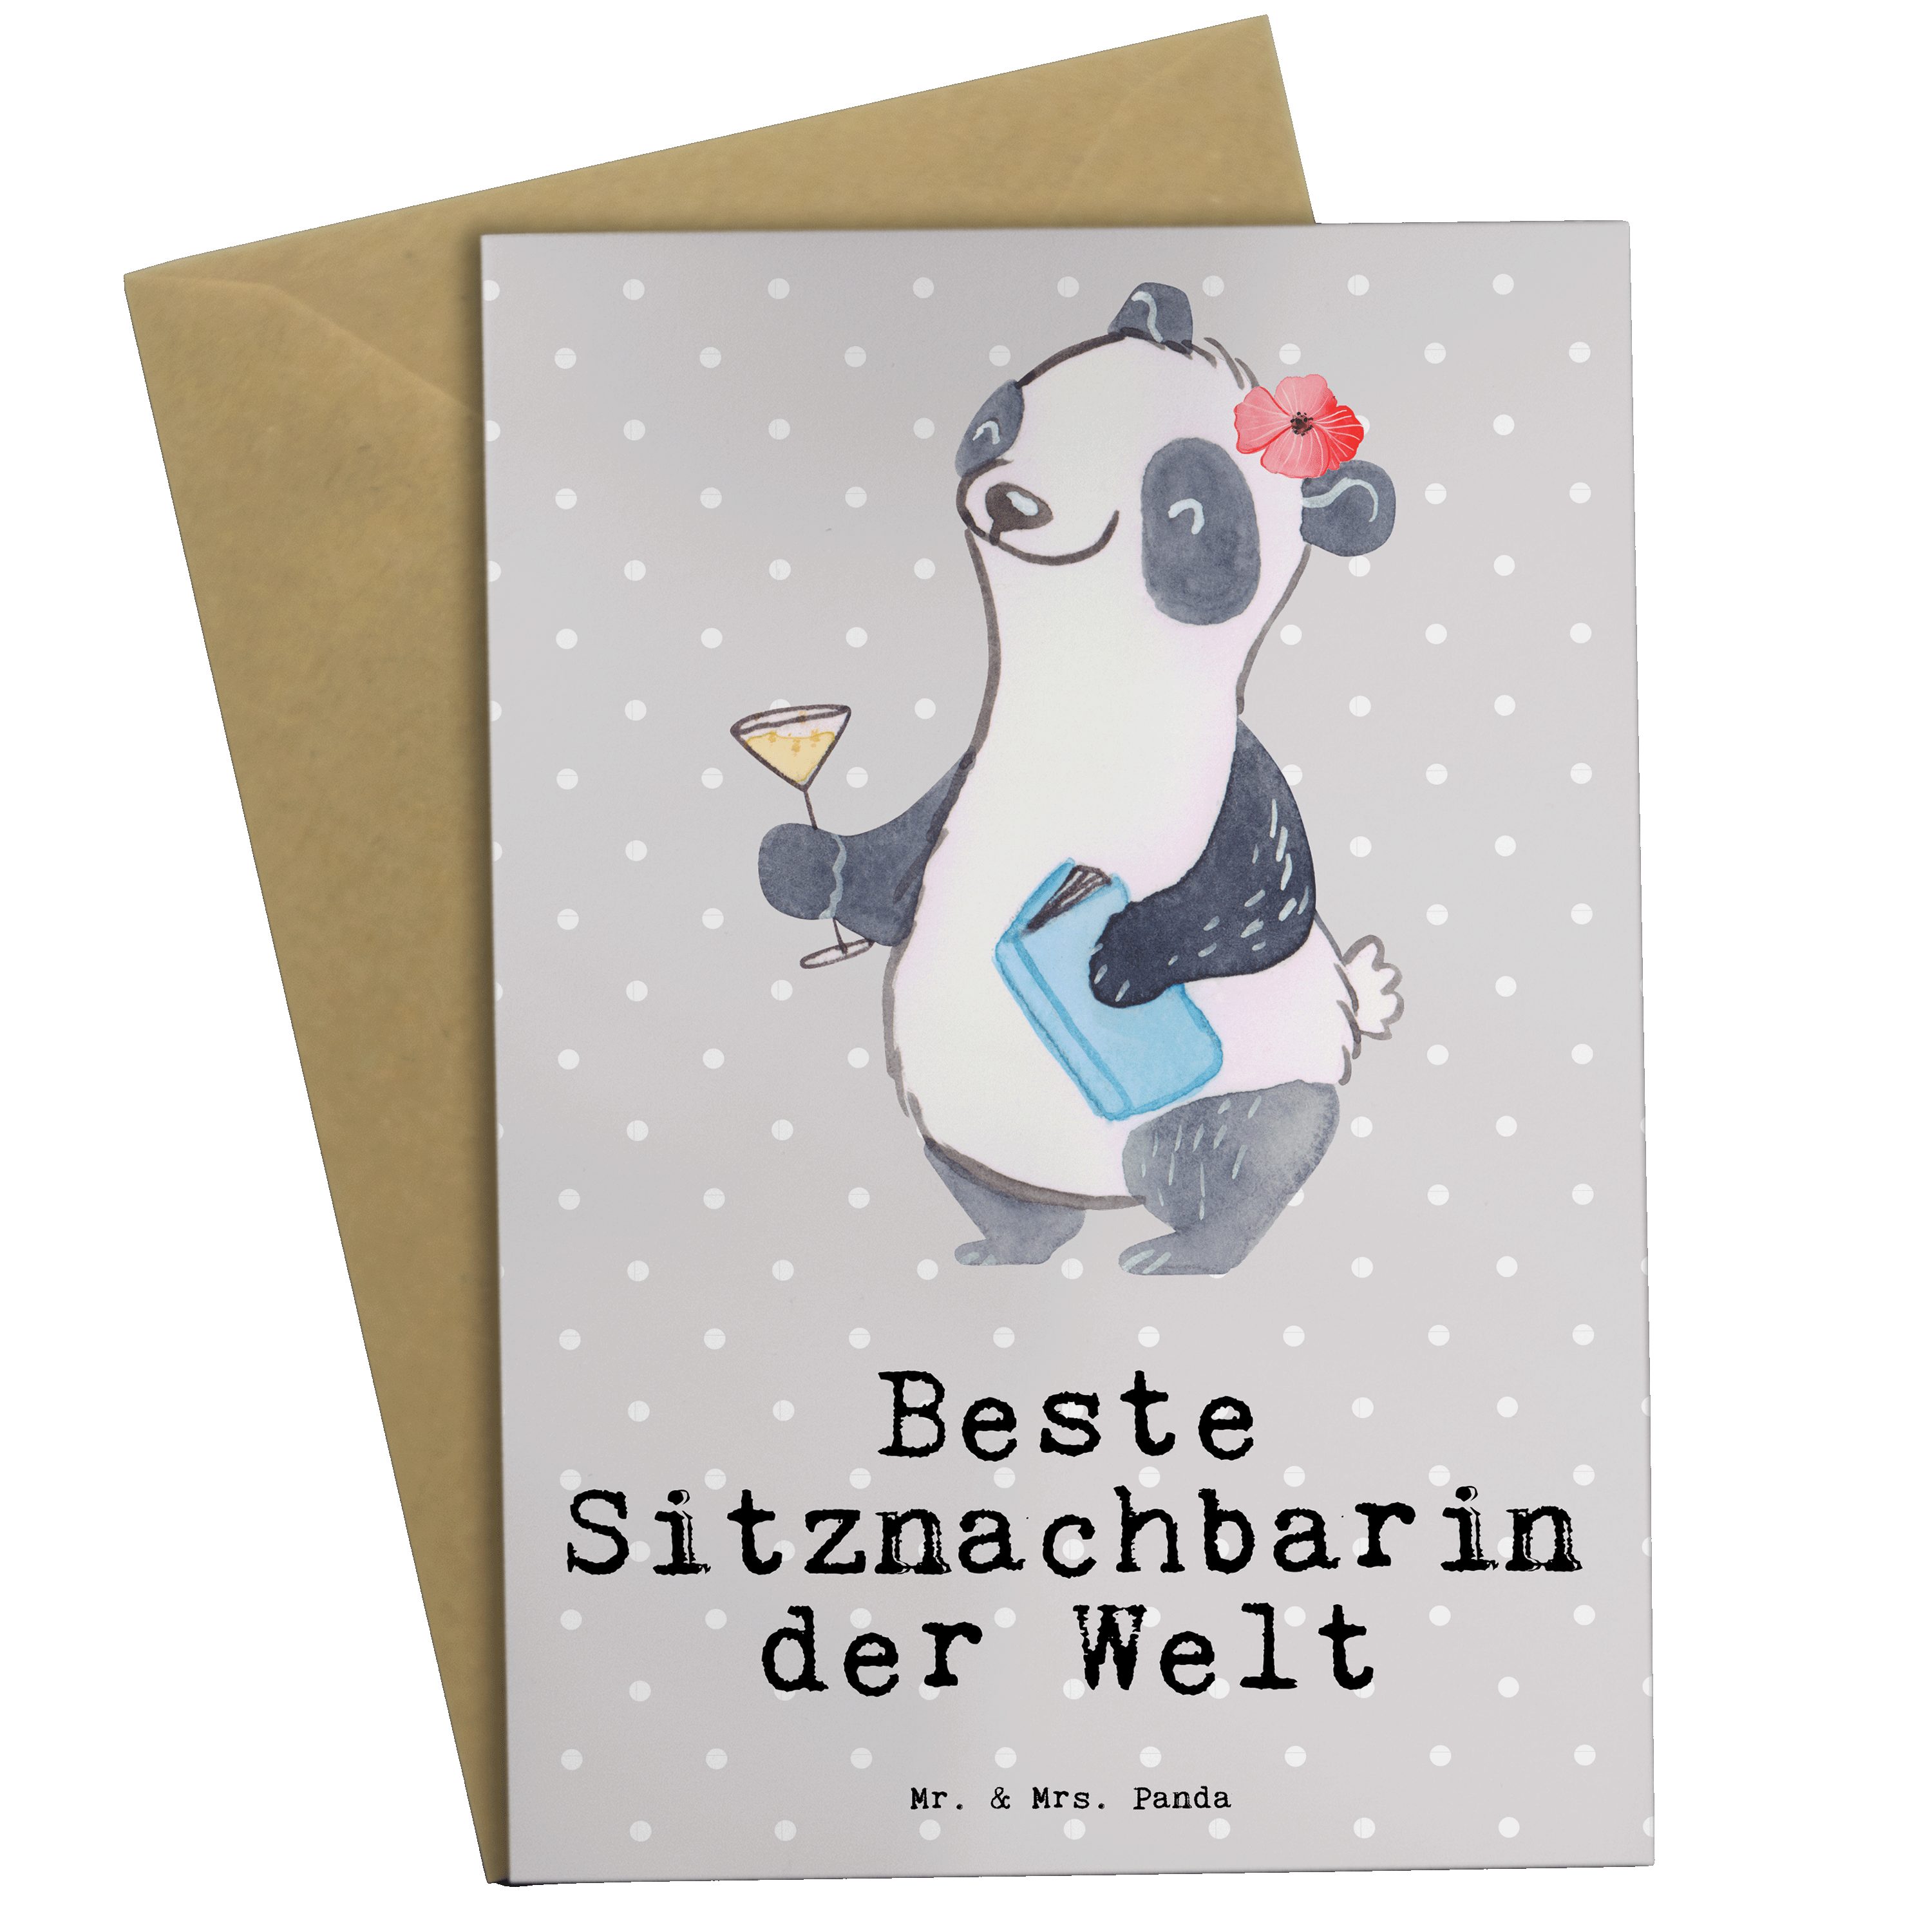 Mr. & Mrs. Panda Grußkarte Panda Beste Sitznachbarin der Welt - Grau Pastell - Geschenk, Schule